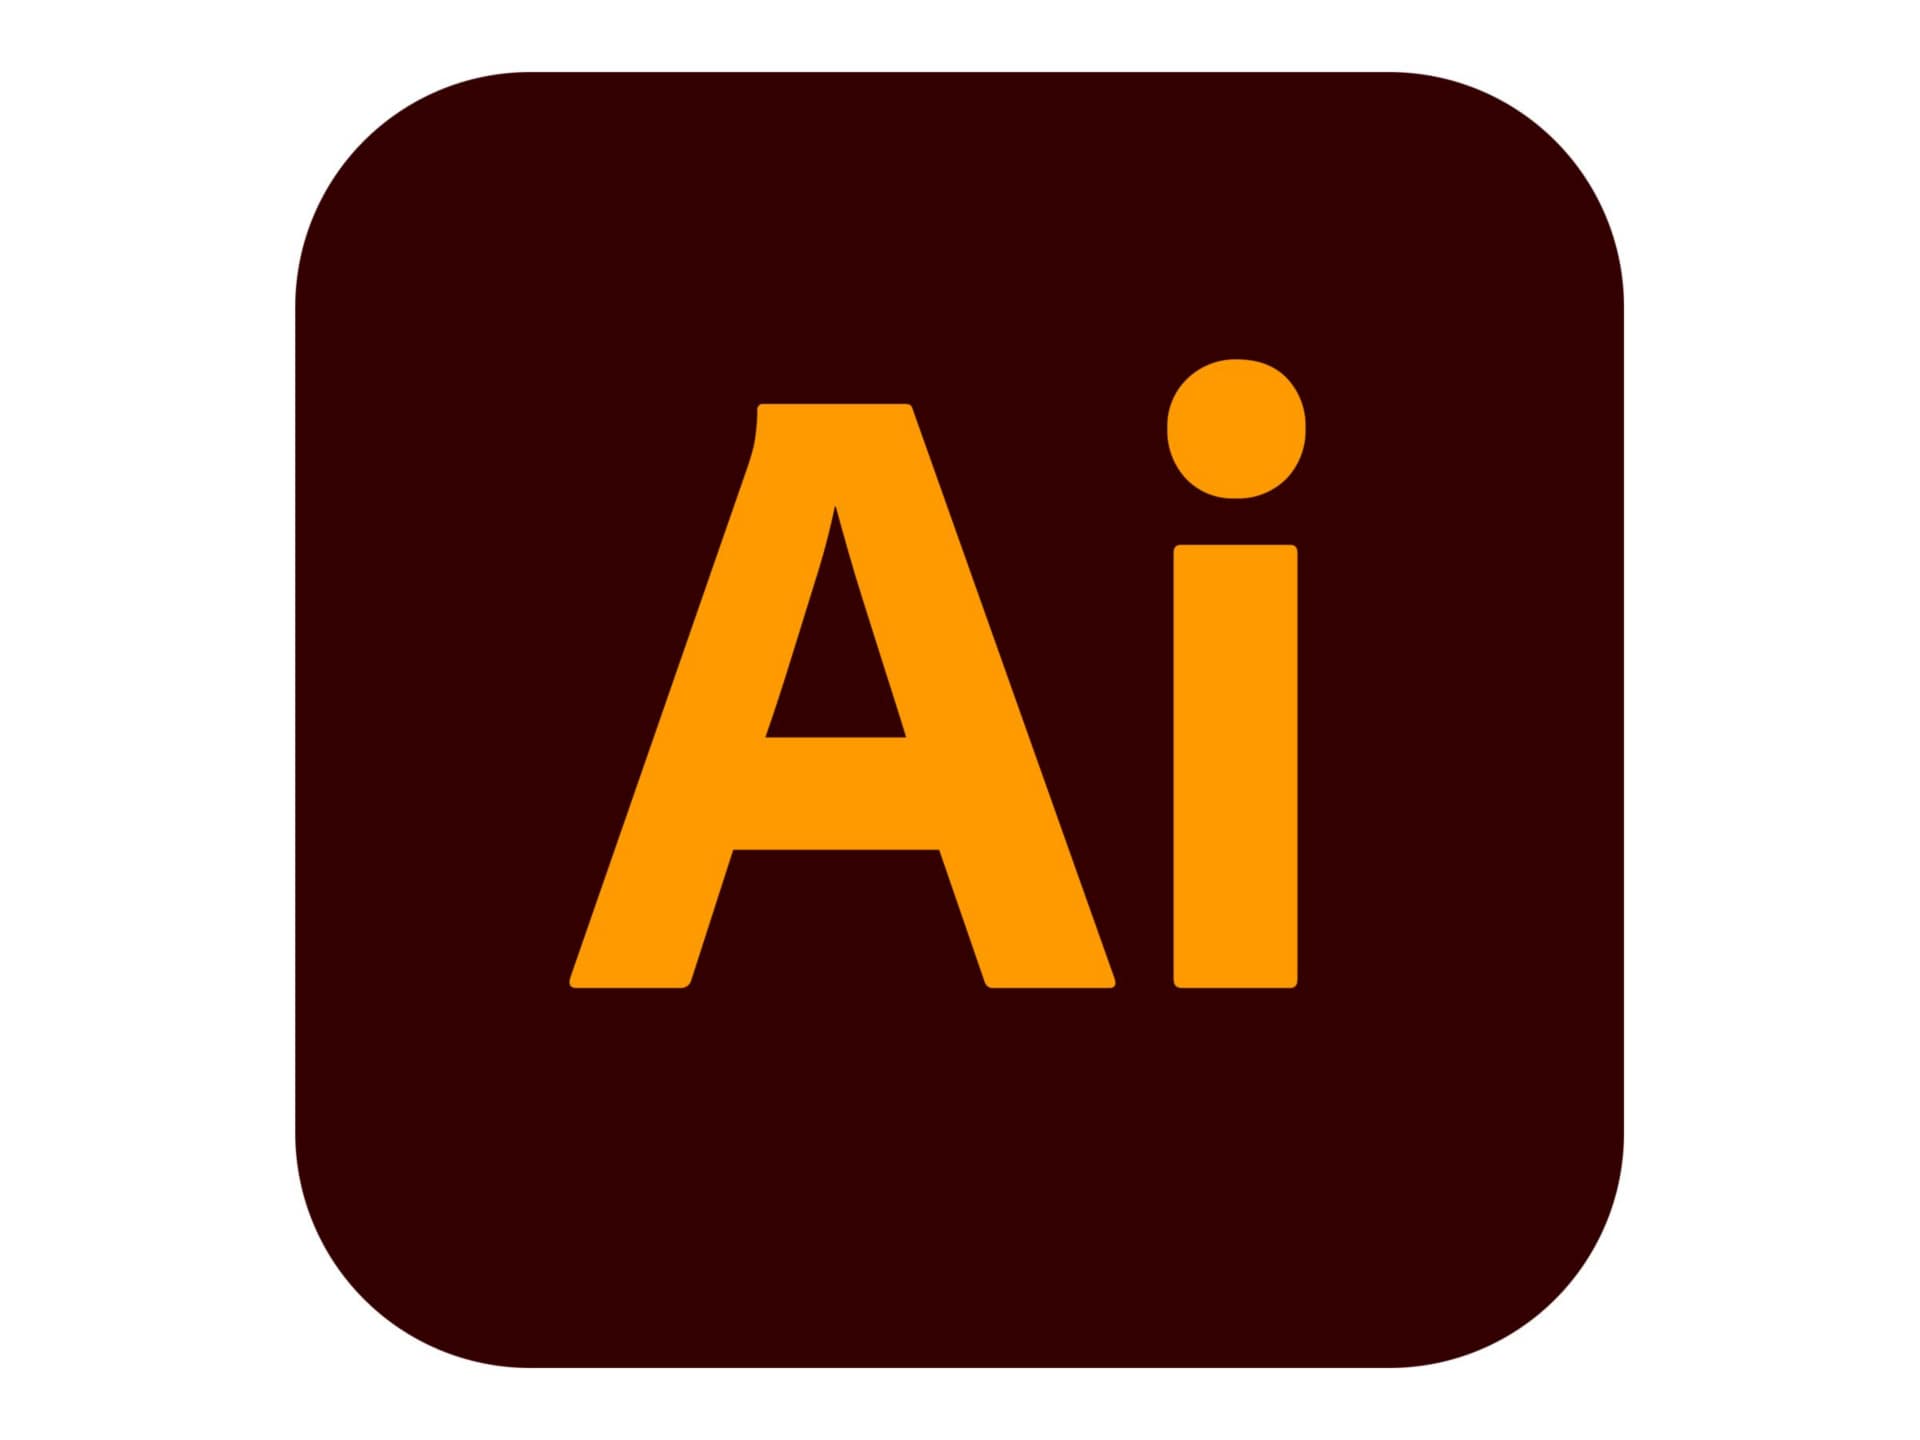 Adobe Illustrator CC for Enterprise - Subscription New (11 months) - 1 named user